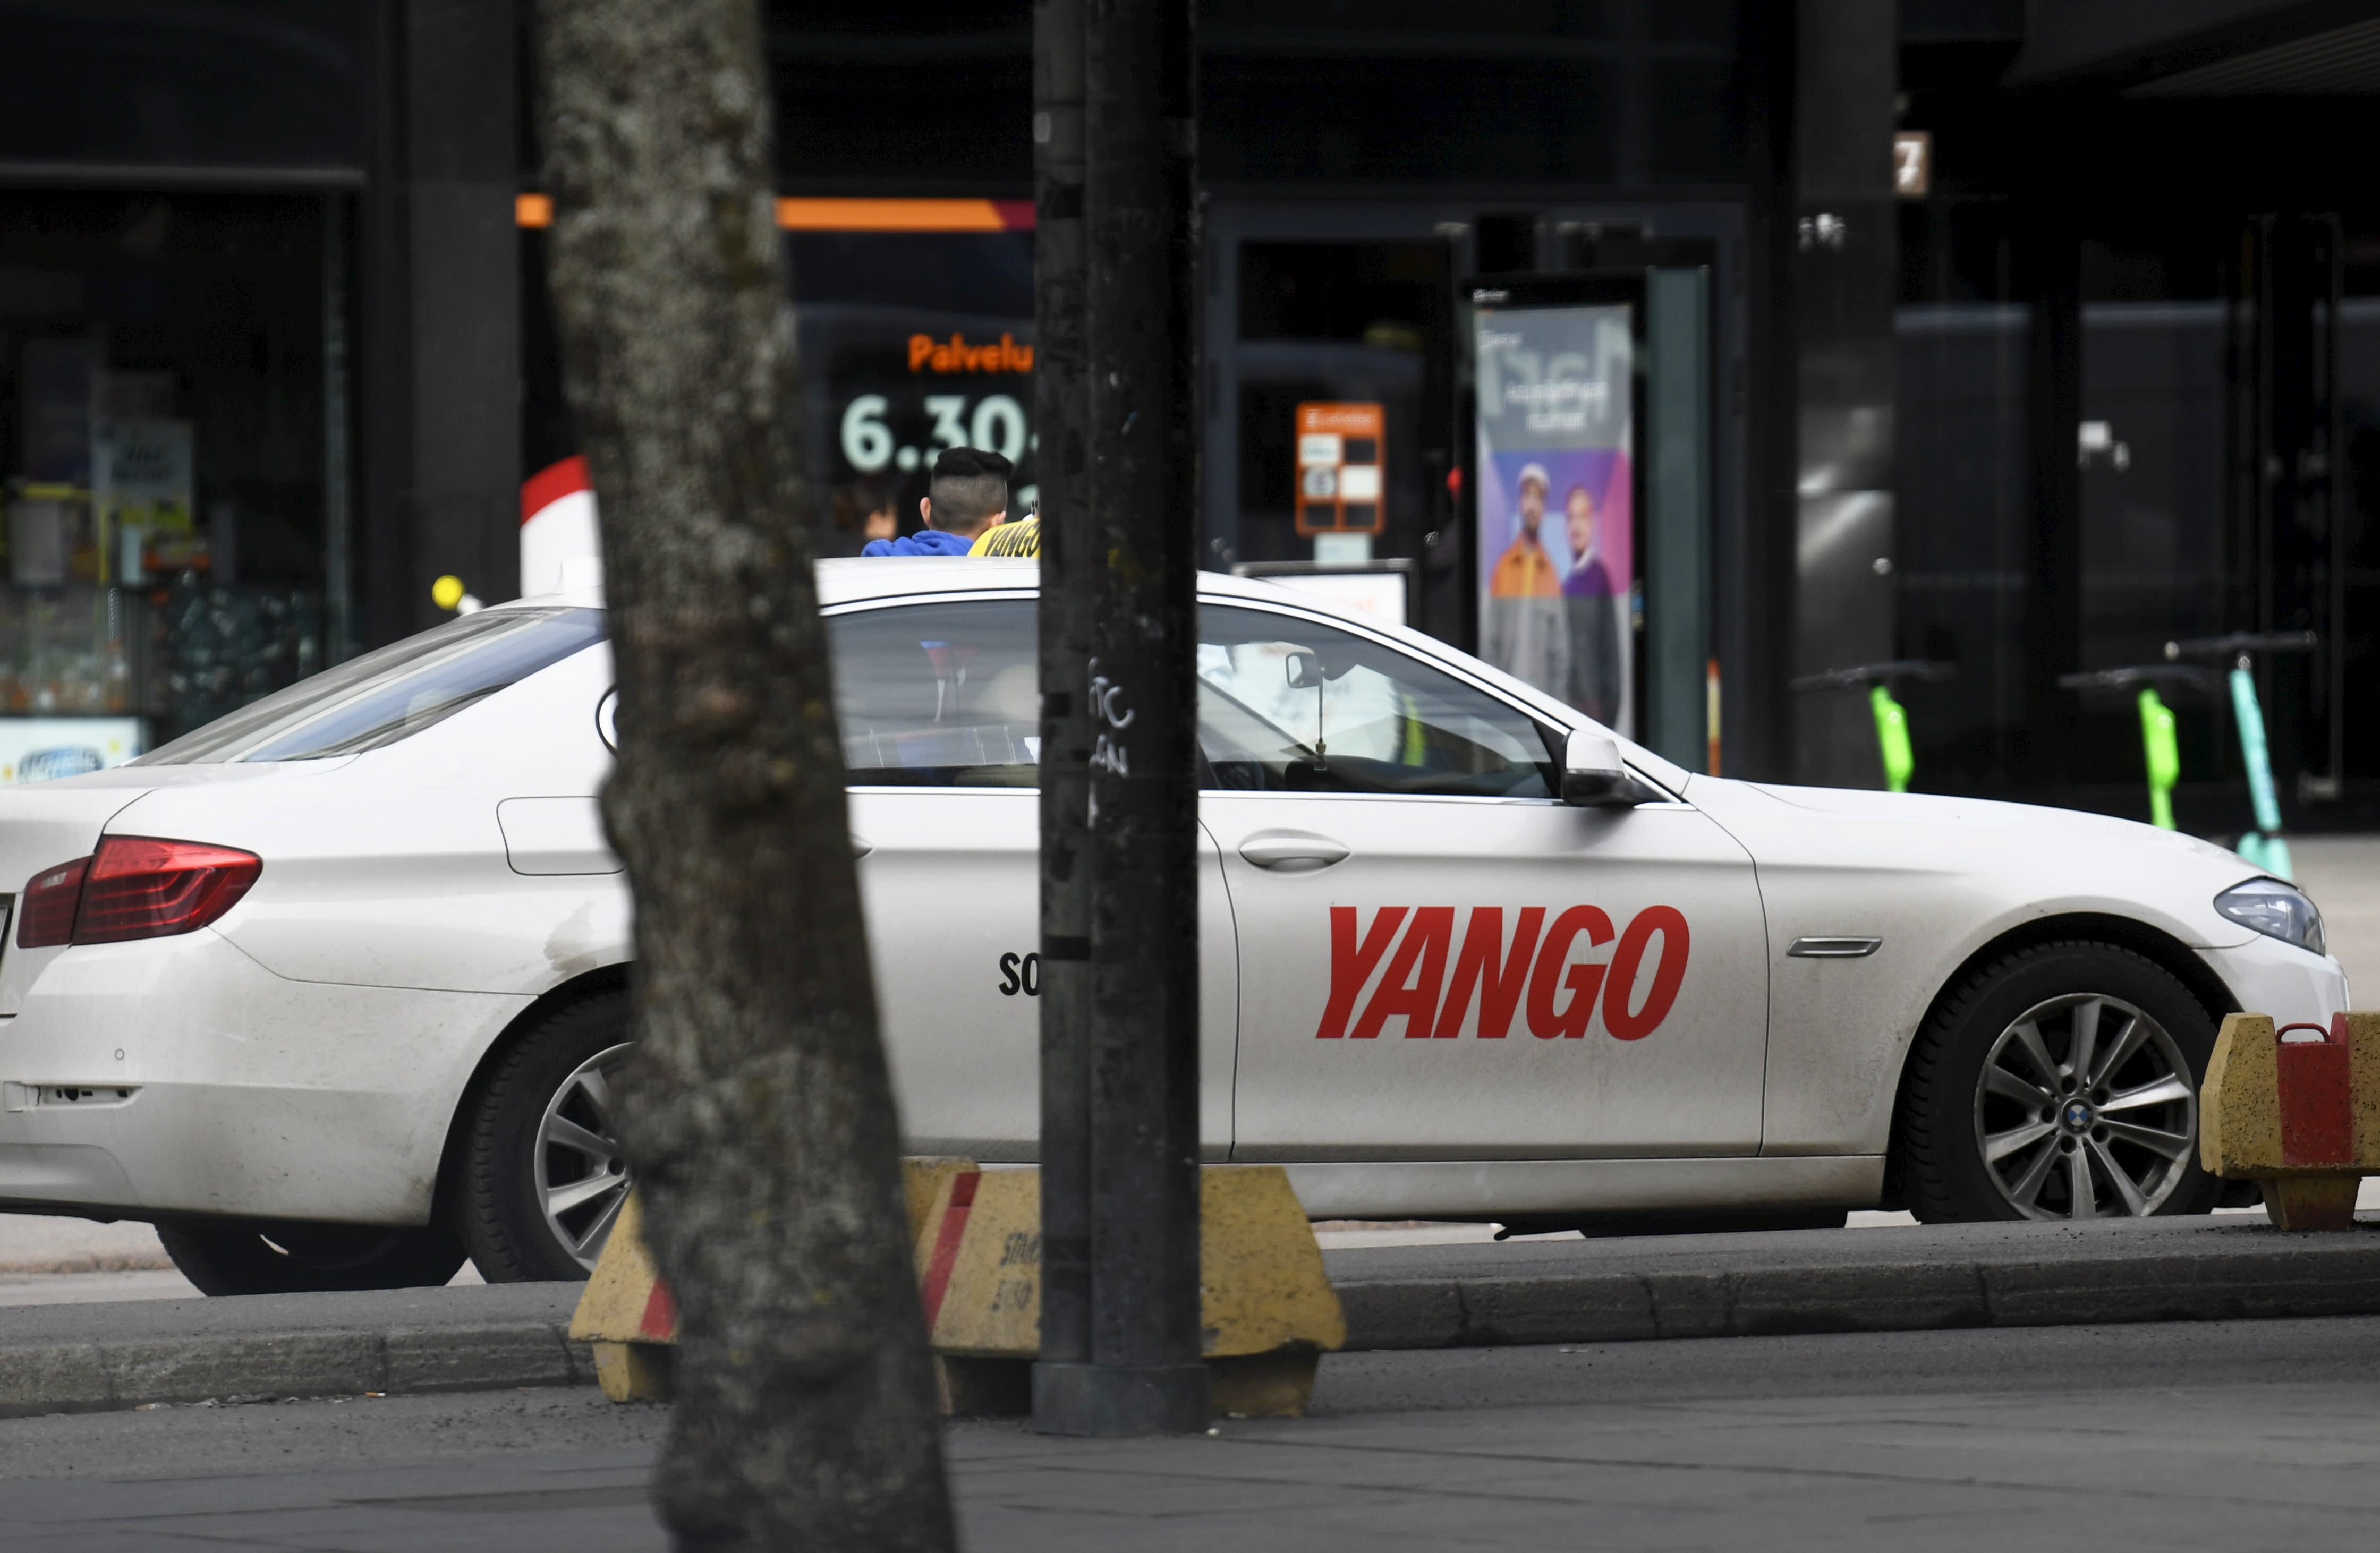 핀란드, Yango 택시 데이터의 러시아로의 이전 중단